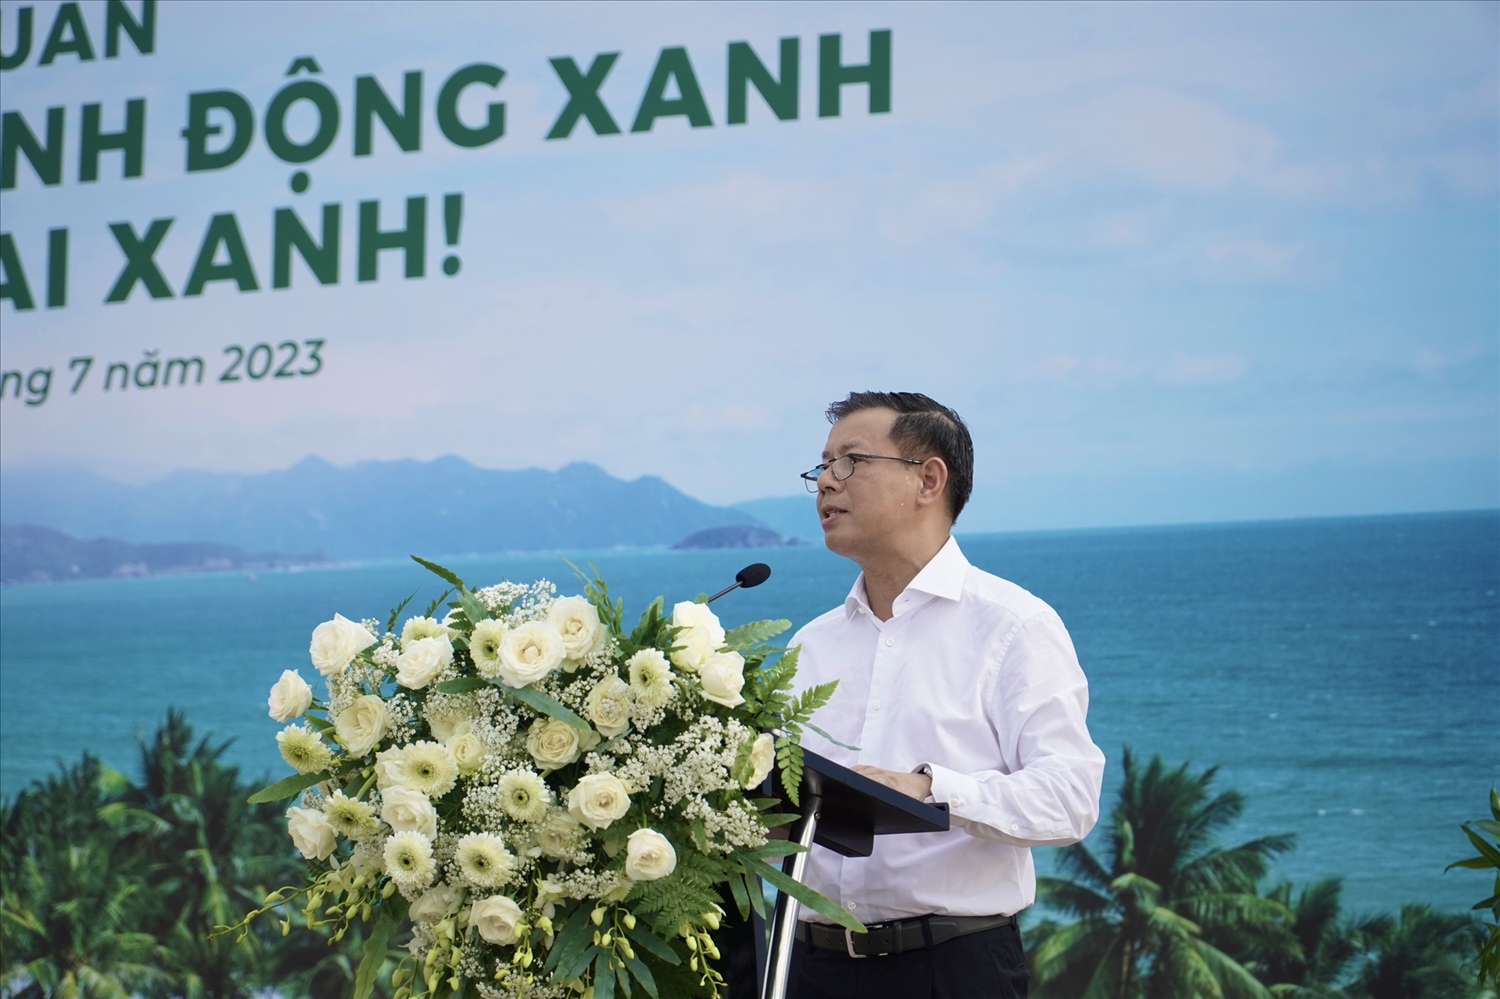 Ông Nguyễn Việt Quang, Phó Chủ tịch HĐQT kiêm Tổng Giám đốc Tập đoàn Vingroup phát biểu tại buổi lễ